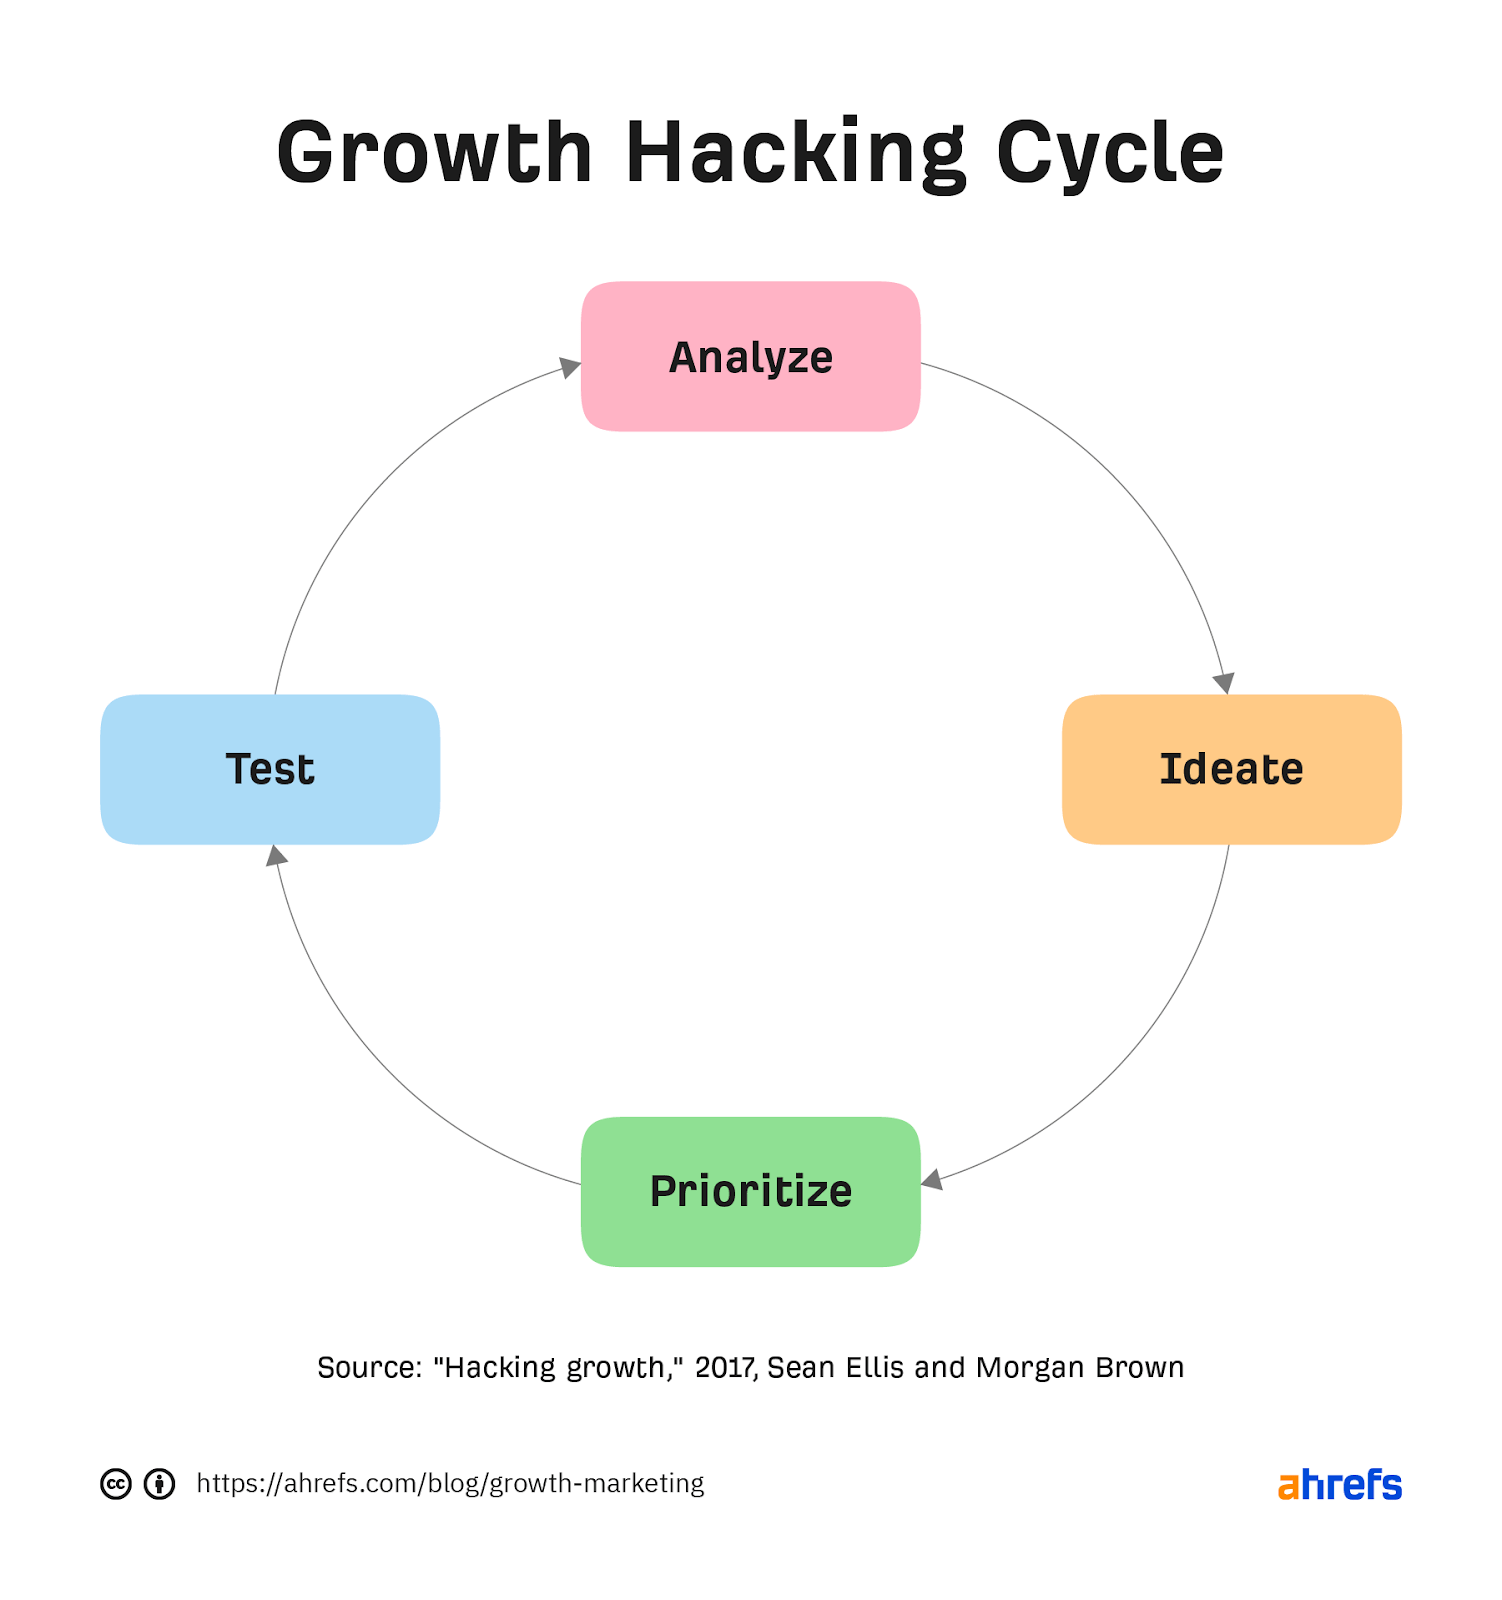 چرخه هک رشد